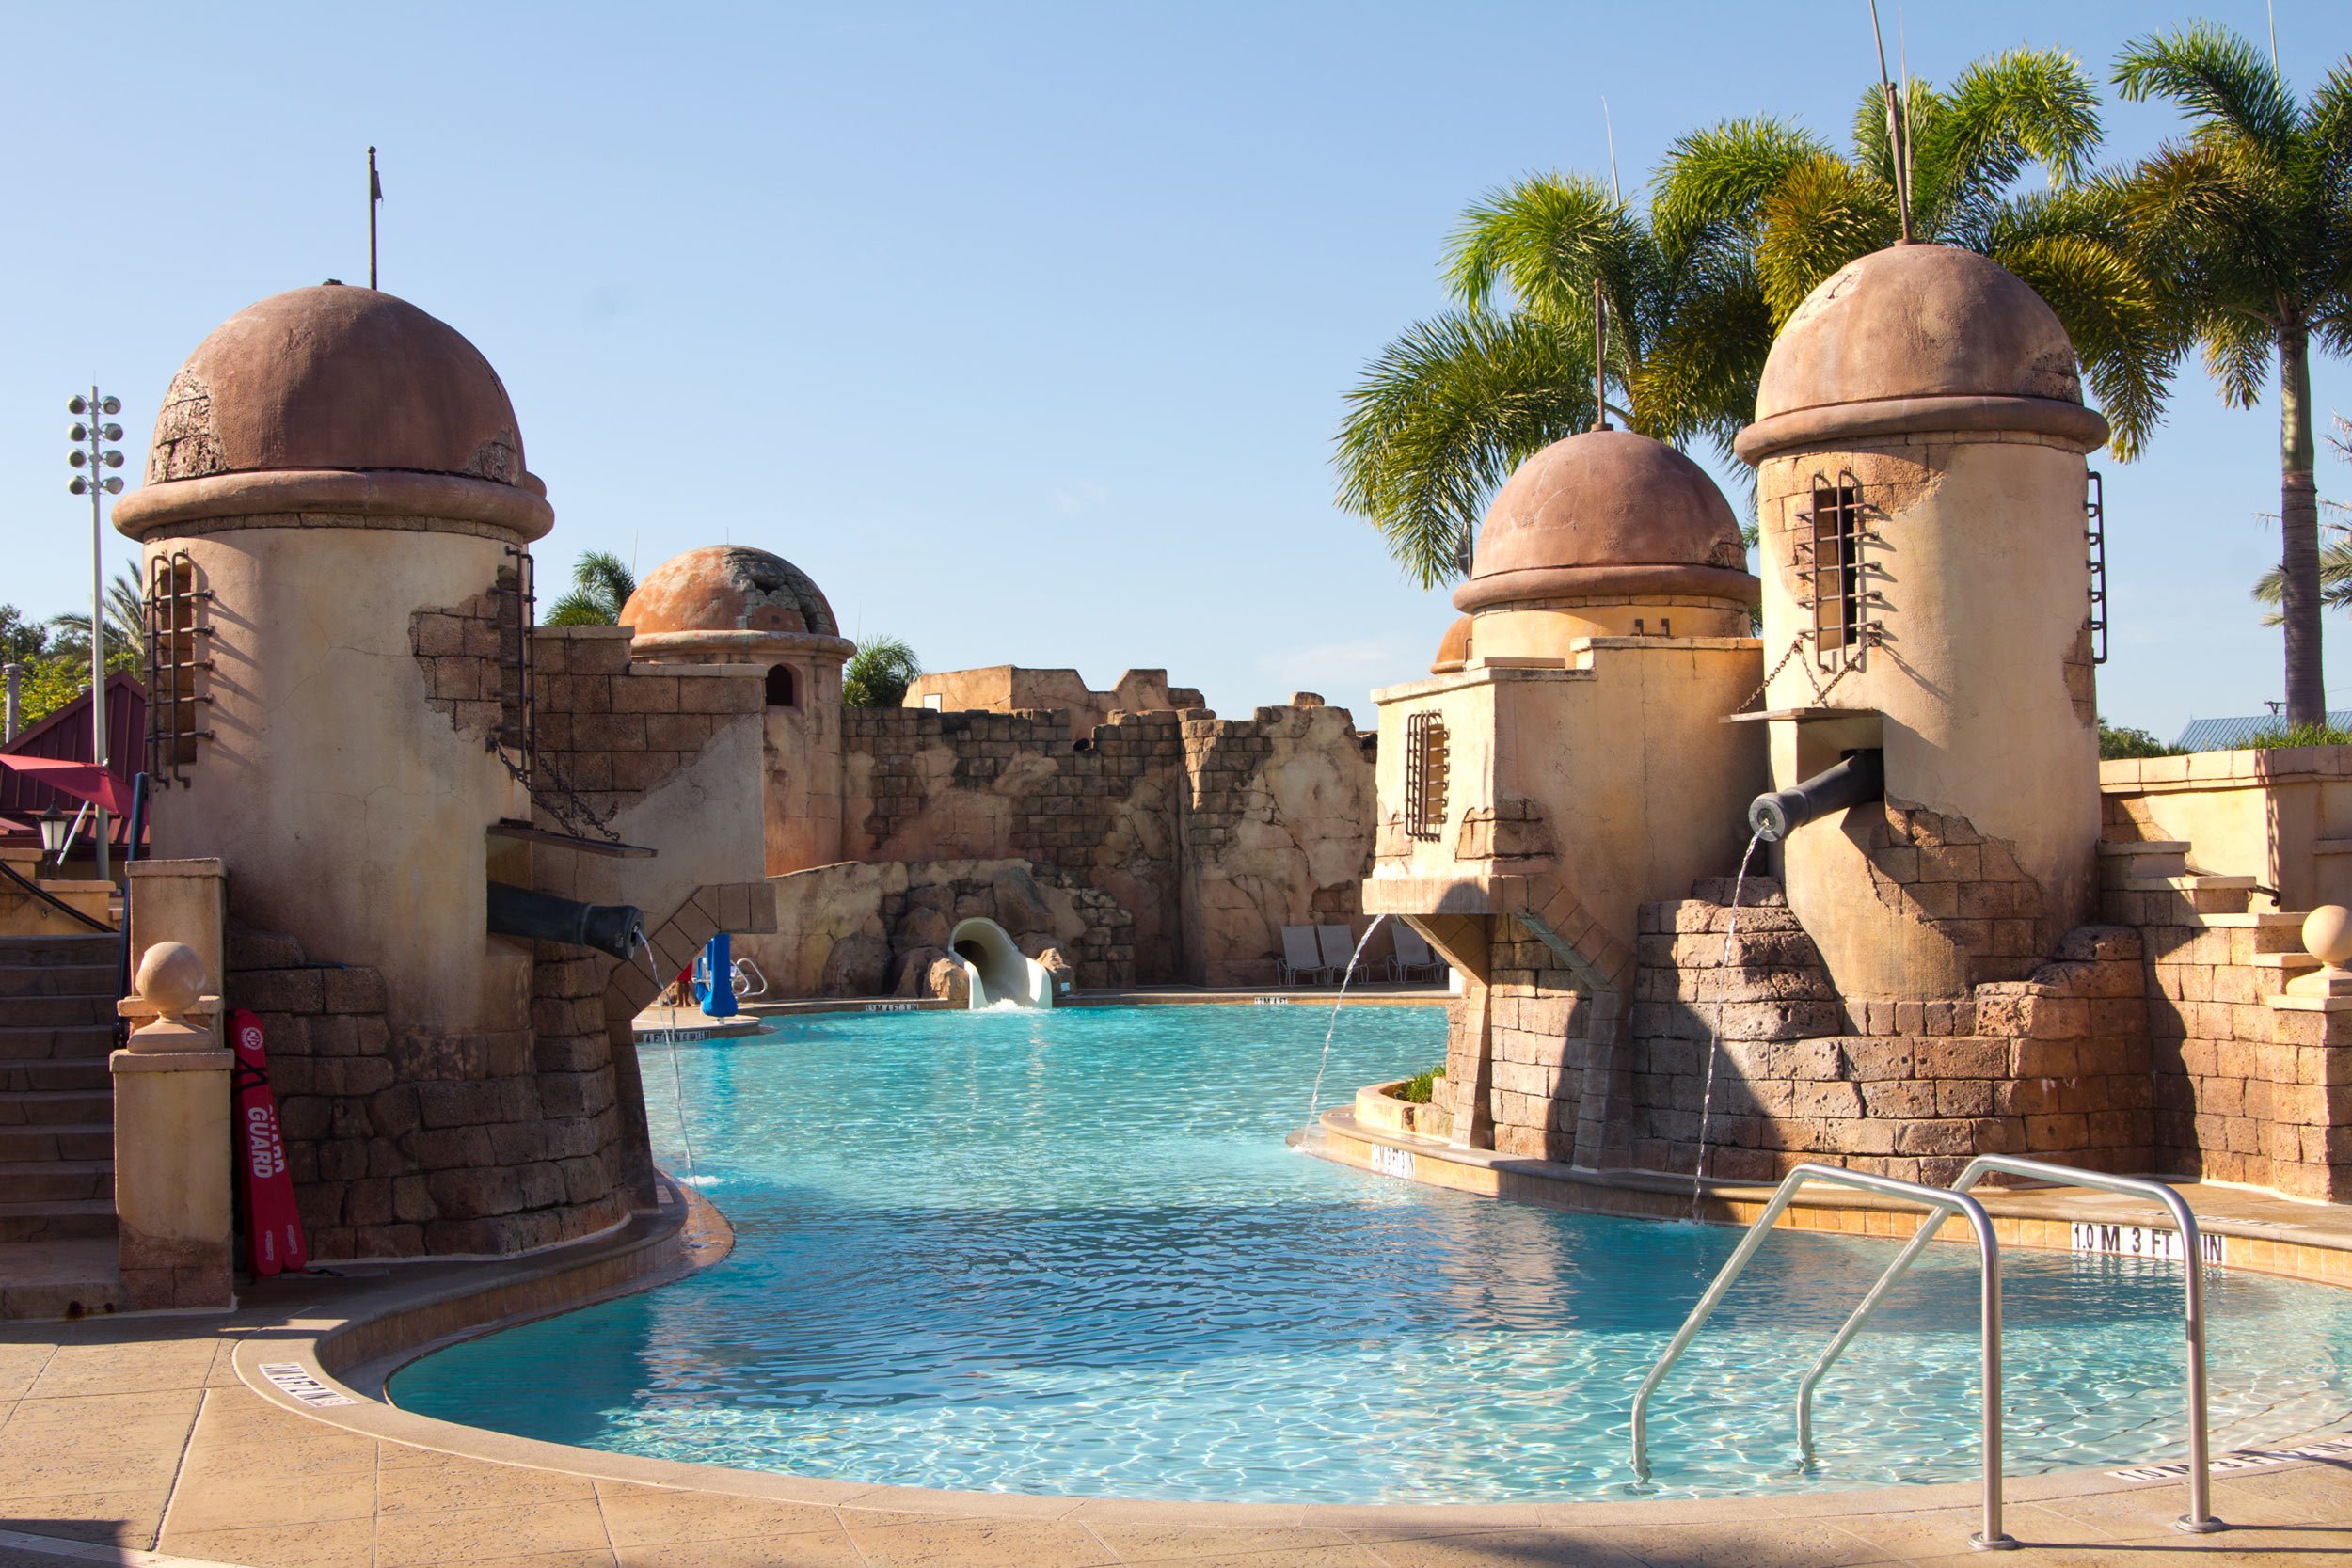 pirate-themed-pool-at-disneys-caribbean-beach-resort